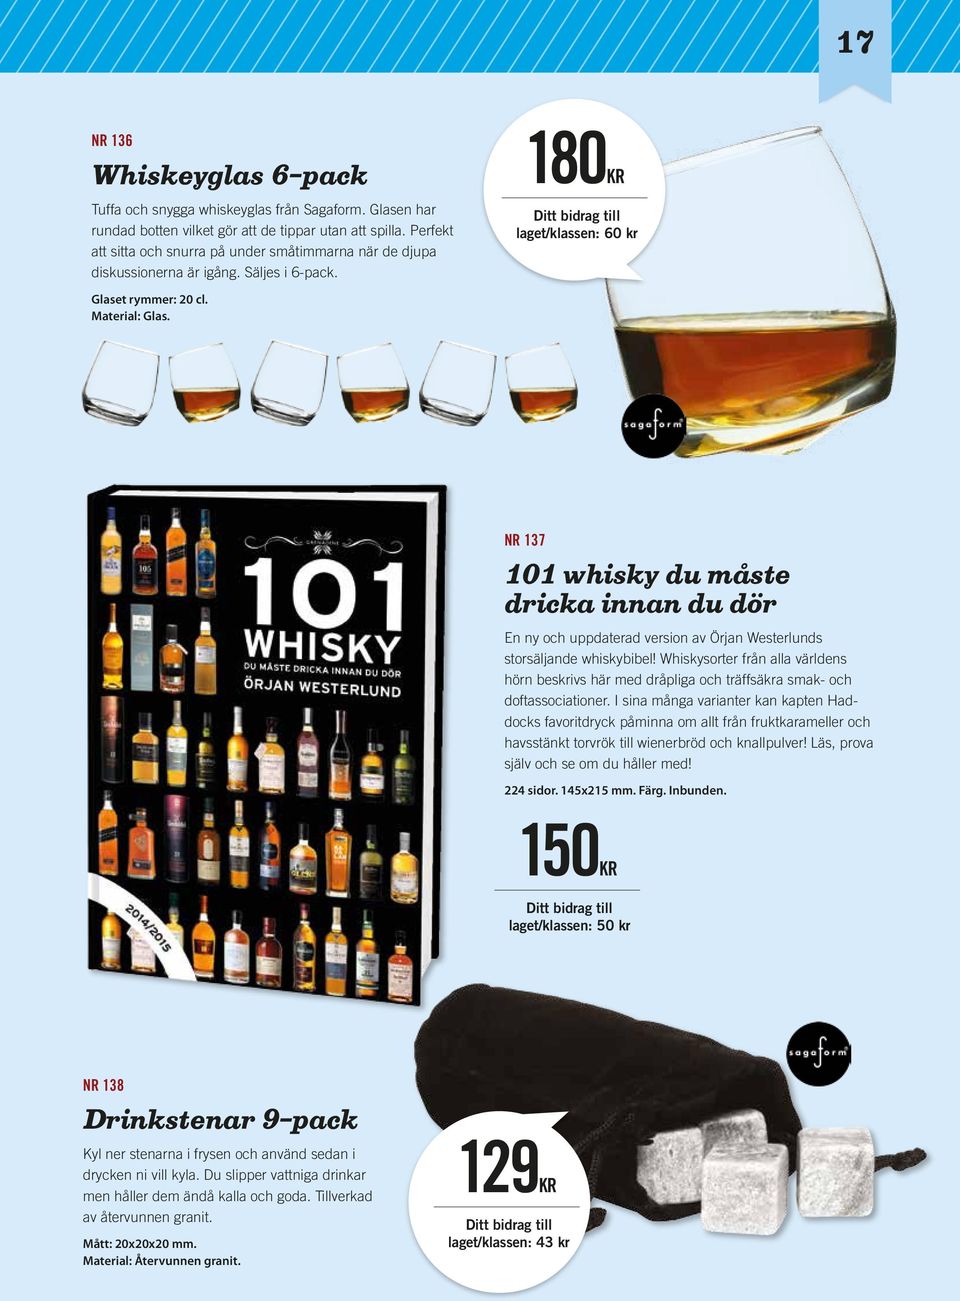 180KR laget/klassen: 60 kr NR 137 101 whisky du måste dricka innan du dör En ny och uppdaterad version av Örjan Westerlunds storsäljande whiskybibel!